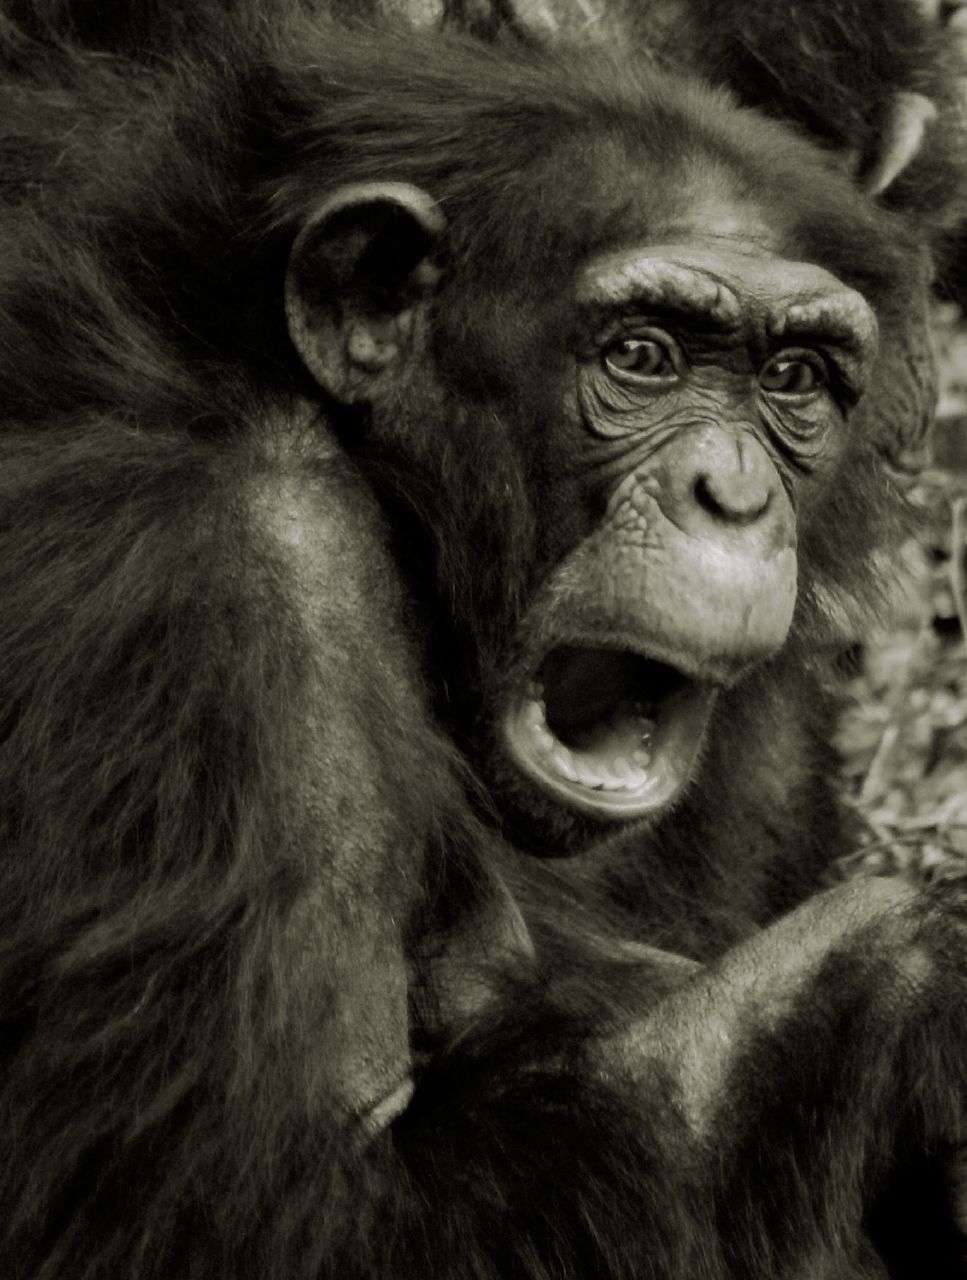 La peur, chez l'Homme comme chez le chimpanzé, se manifeste par des cris. Mais aussi par d'autres signes caractéristiques de l'émotion, comme les expressions faciales. © patries71, Flickr, cc by nc nd 2.0